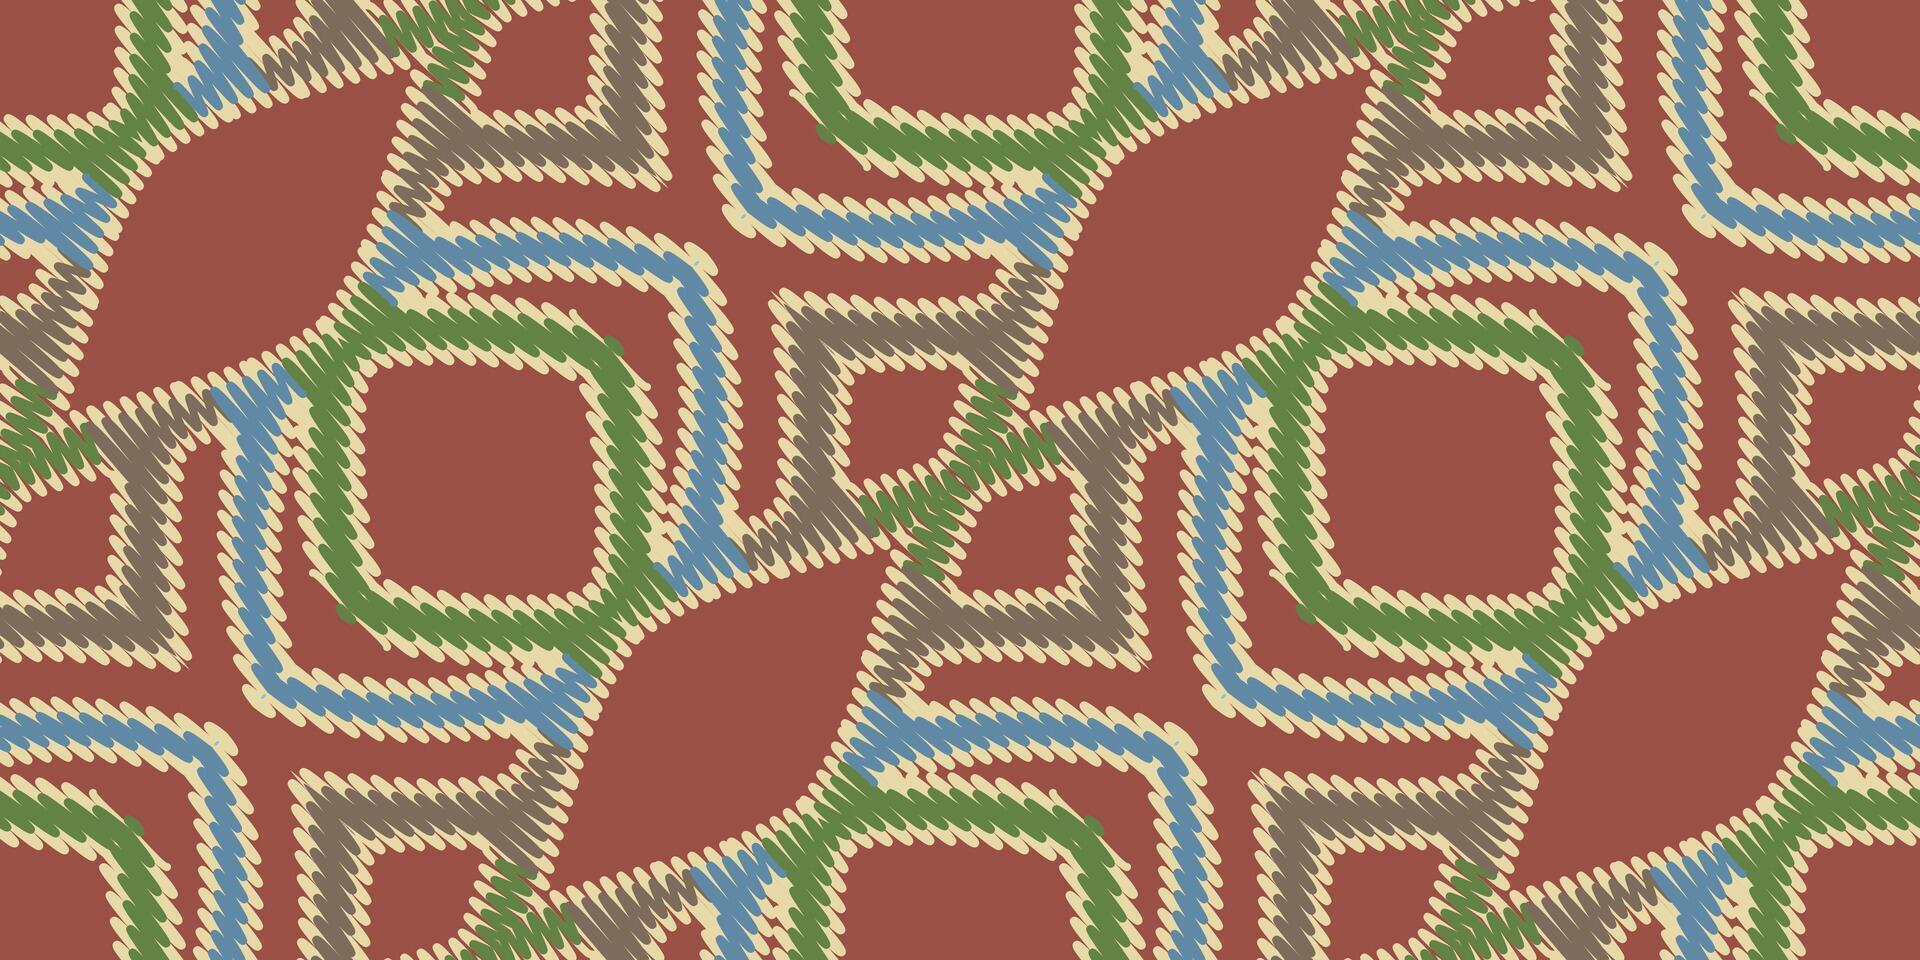 africain ikat paisley broderie. géométrique ethnique Oriental sans couture modèle traditionnel Contexte. aztèque style abstrait vecteur illustration. conception pour texture, tissu, vêtements, emballage, tapis.